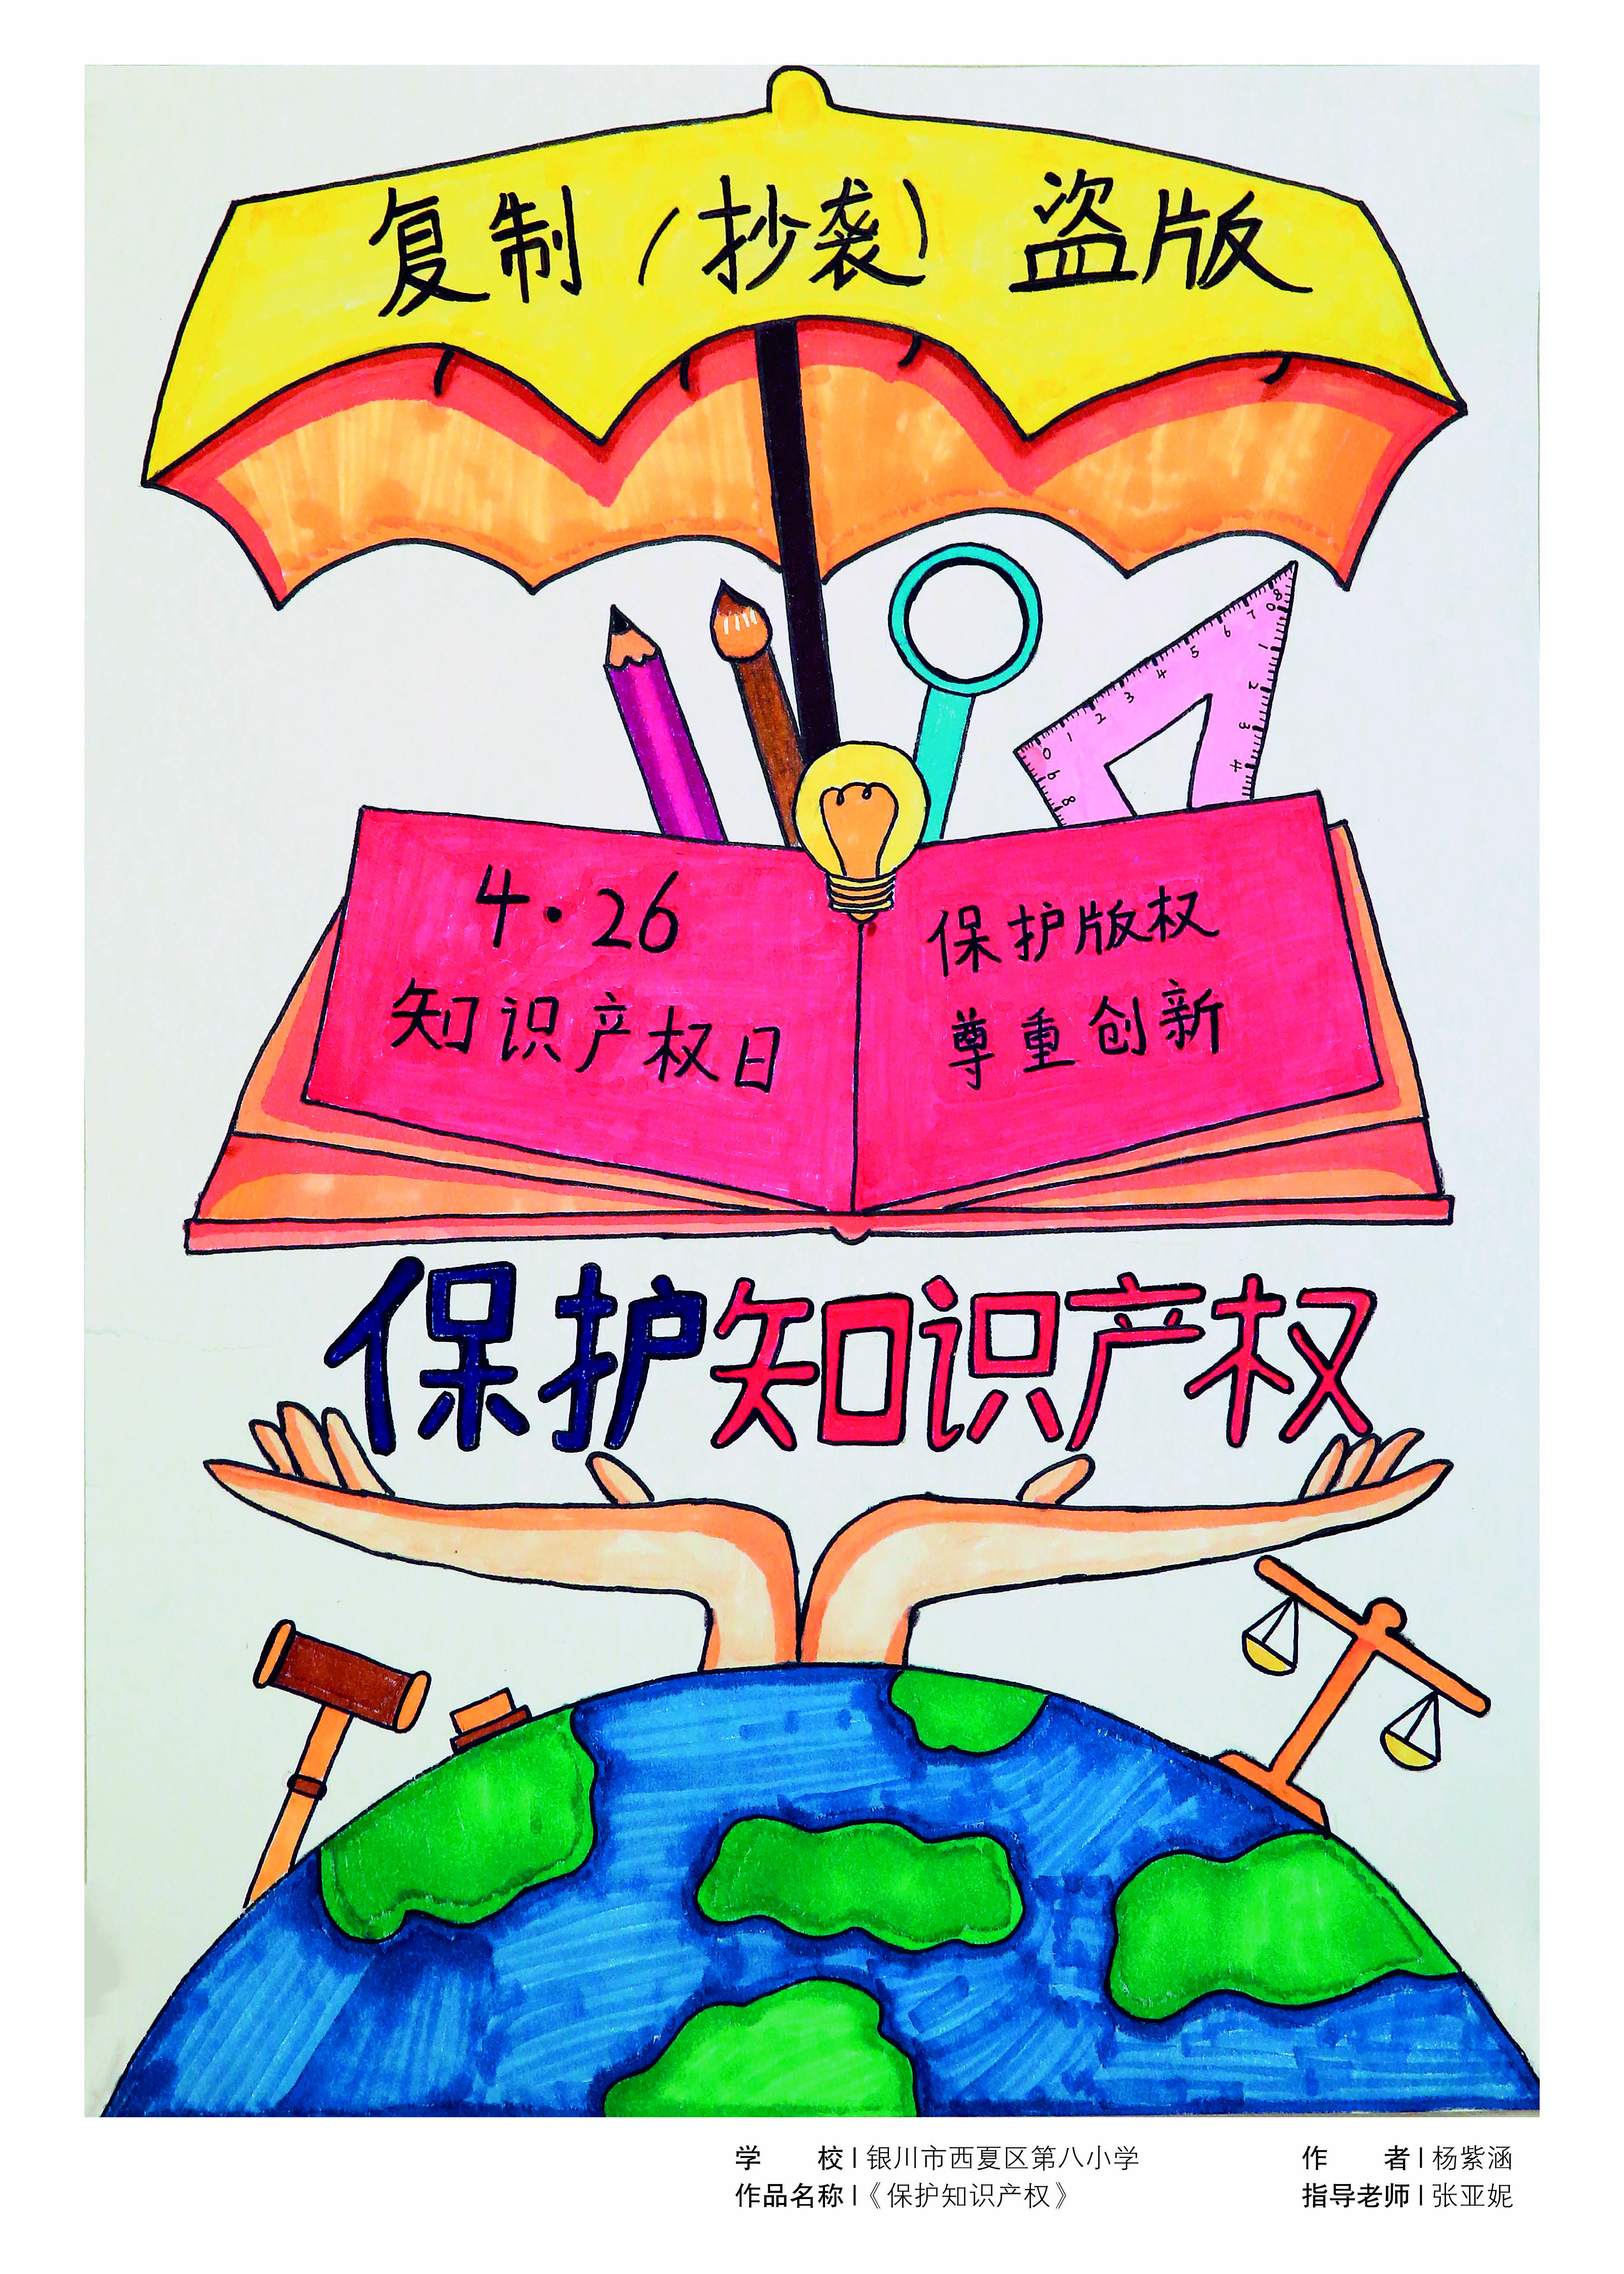 2023年银川市中小学生版权保护海报设计大赛成果丰硕